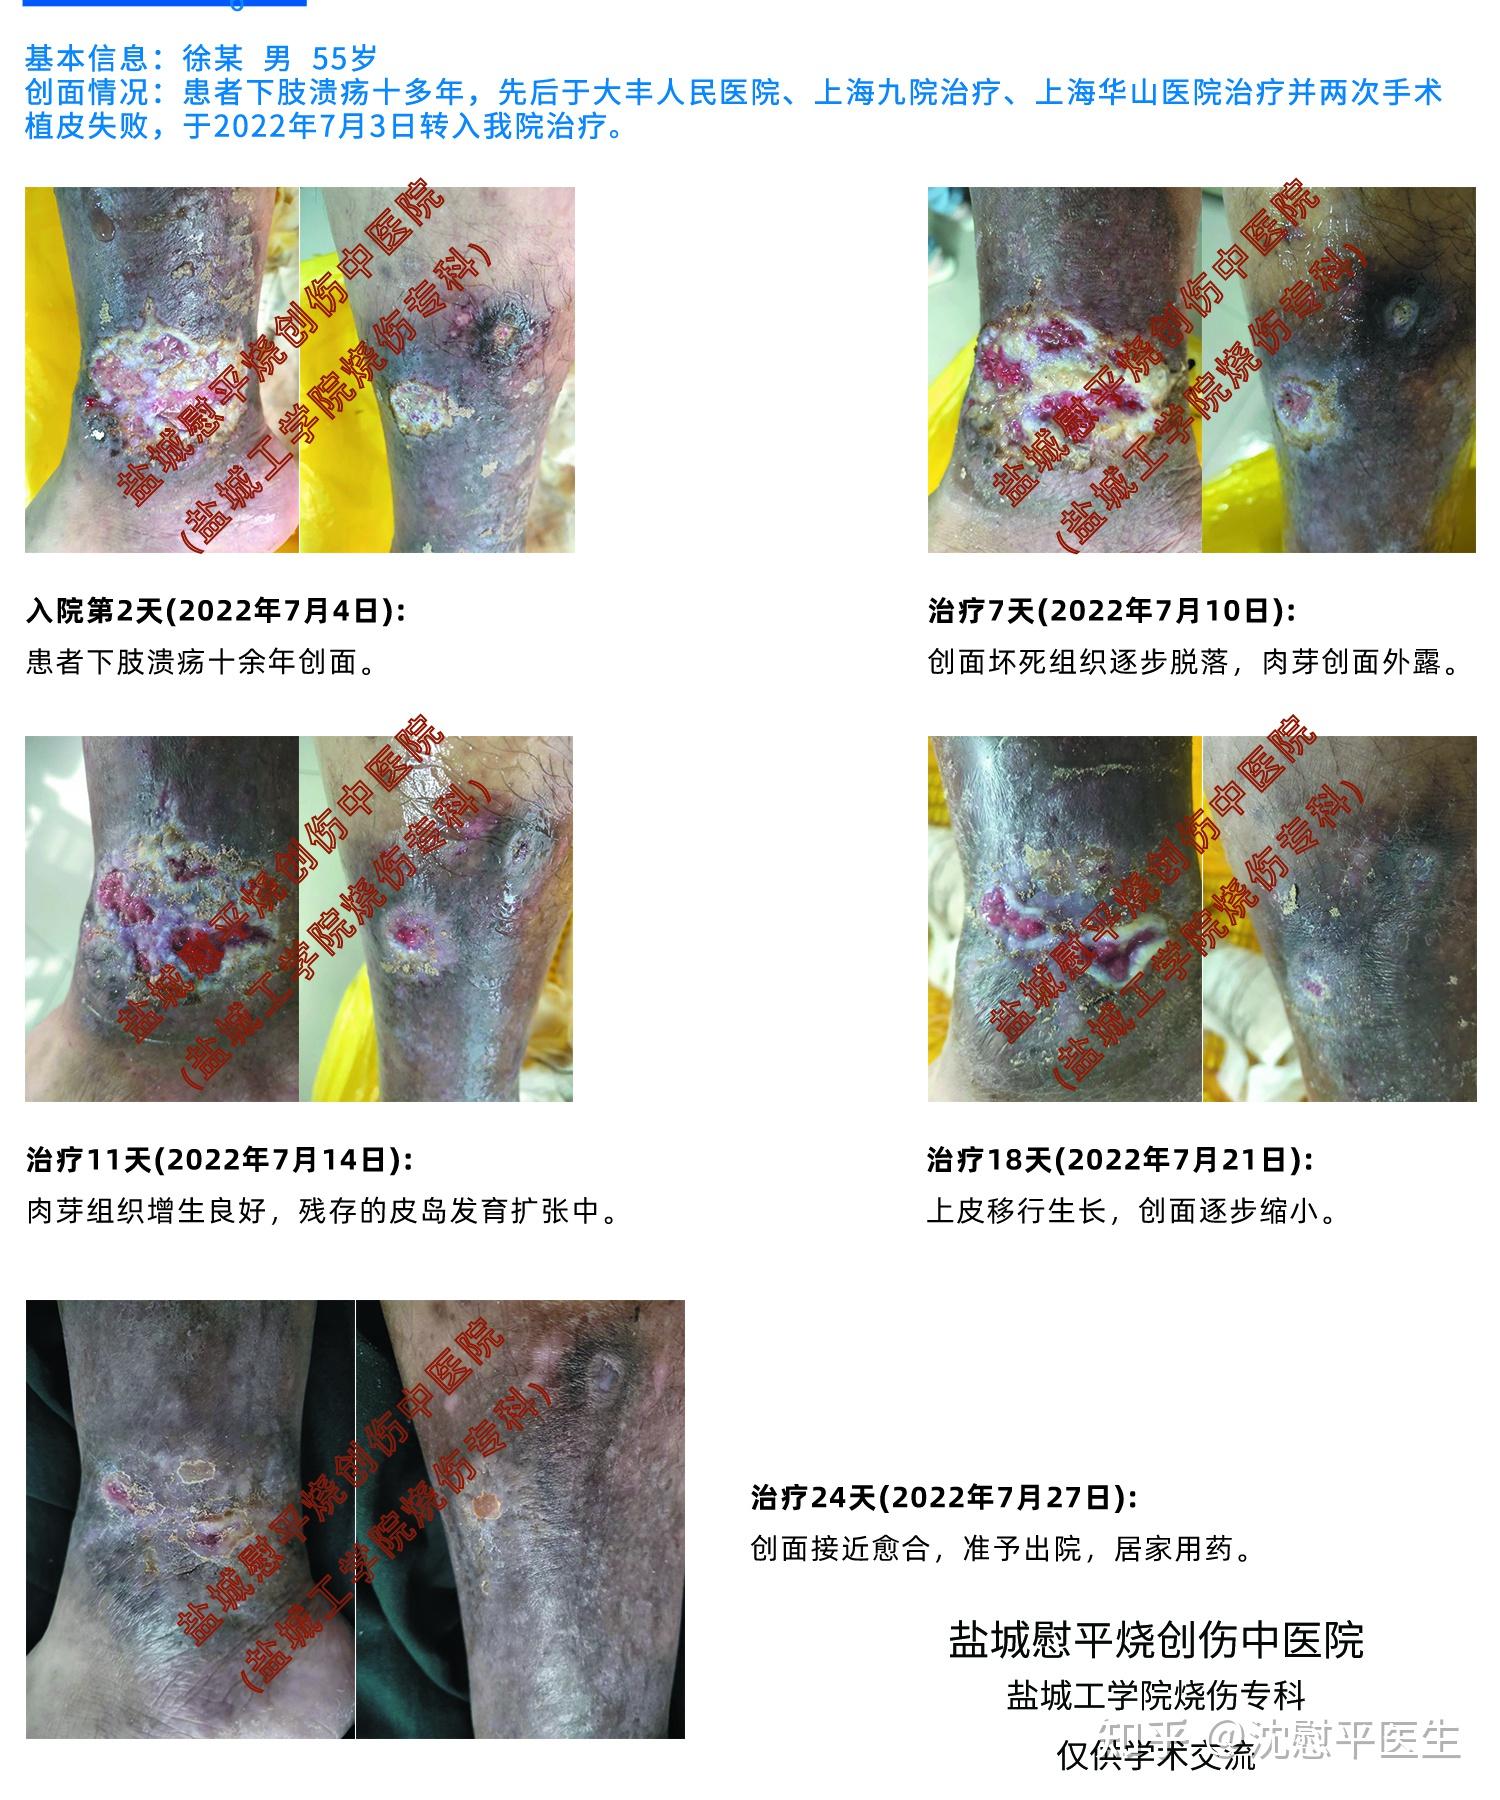 刺青切除+全層植皮術、術後2週 | TETSU形成・美容クリニック 田中哲一郎のブログ